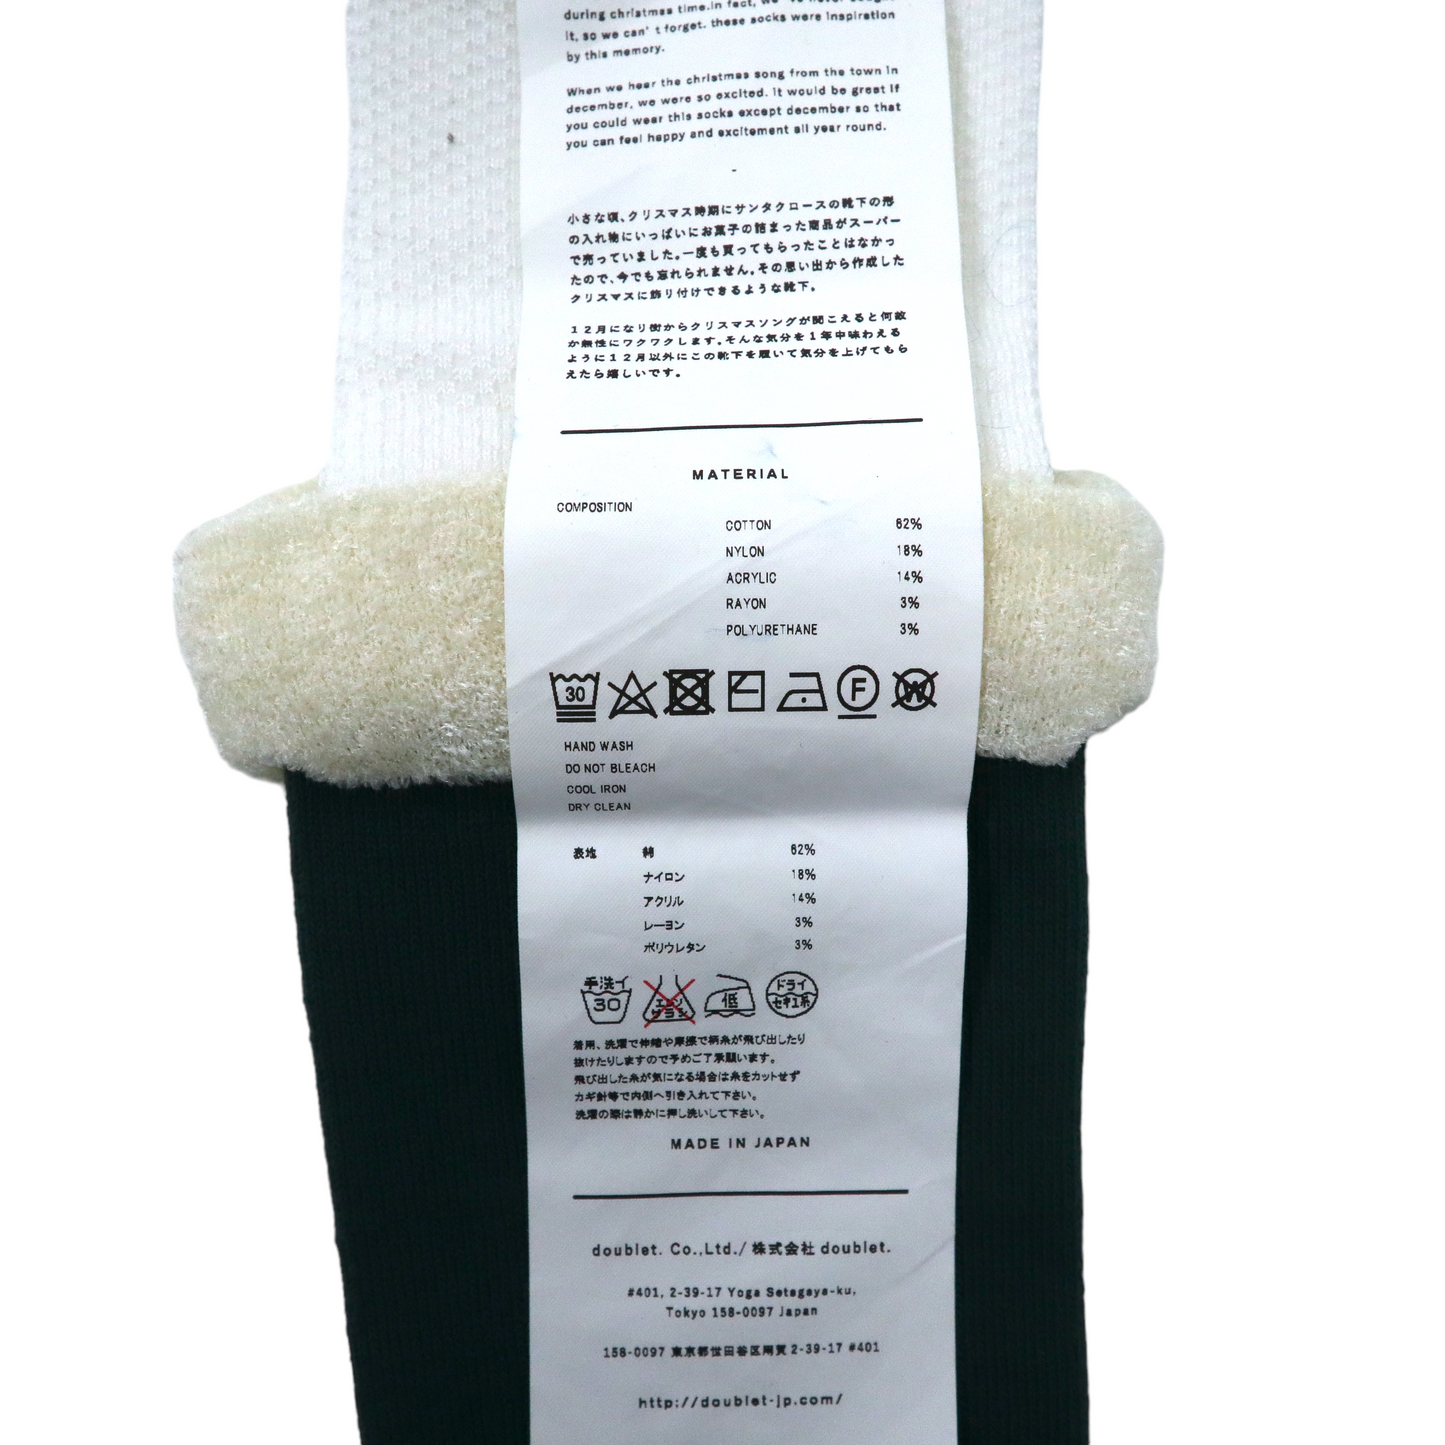 doublet 靴下 ソックス FREE ホワイト グリーン コットン JINGLE BELLS SOCKS 21SS43SC15 日本製 未使用品